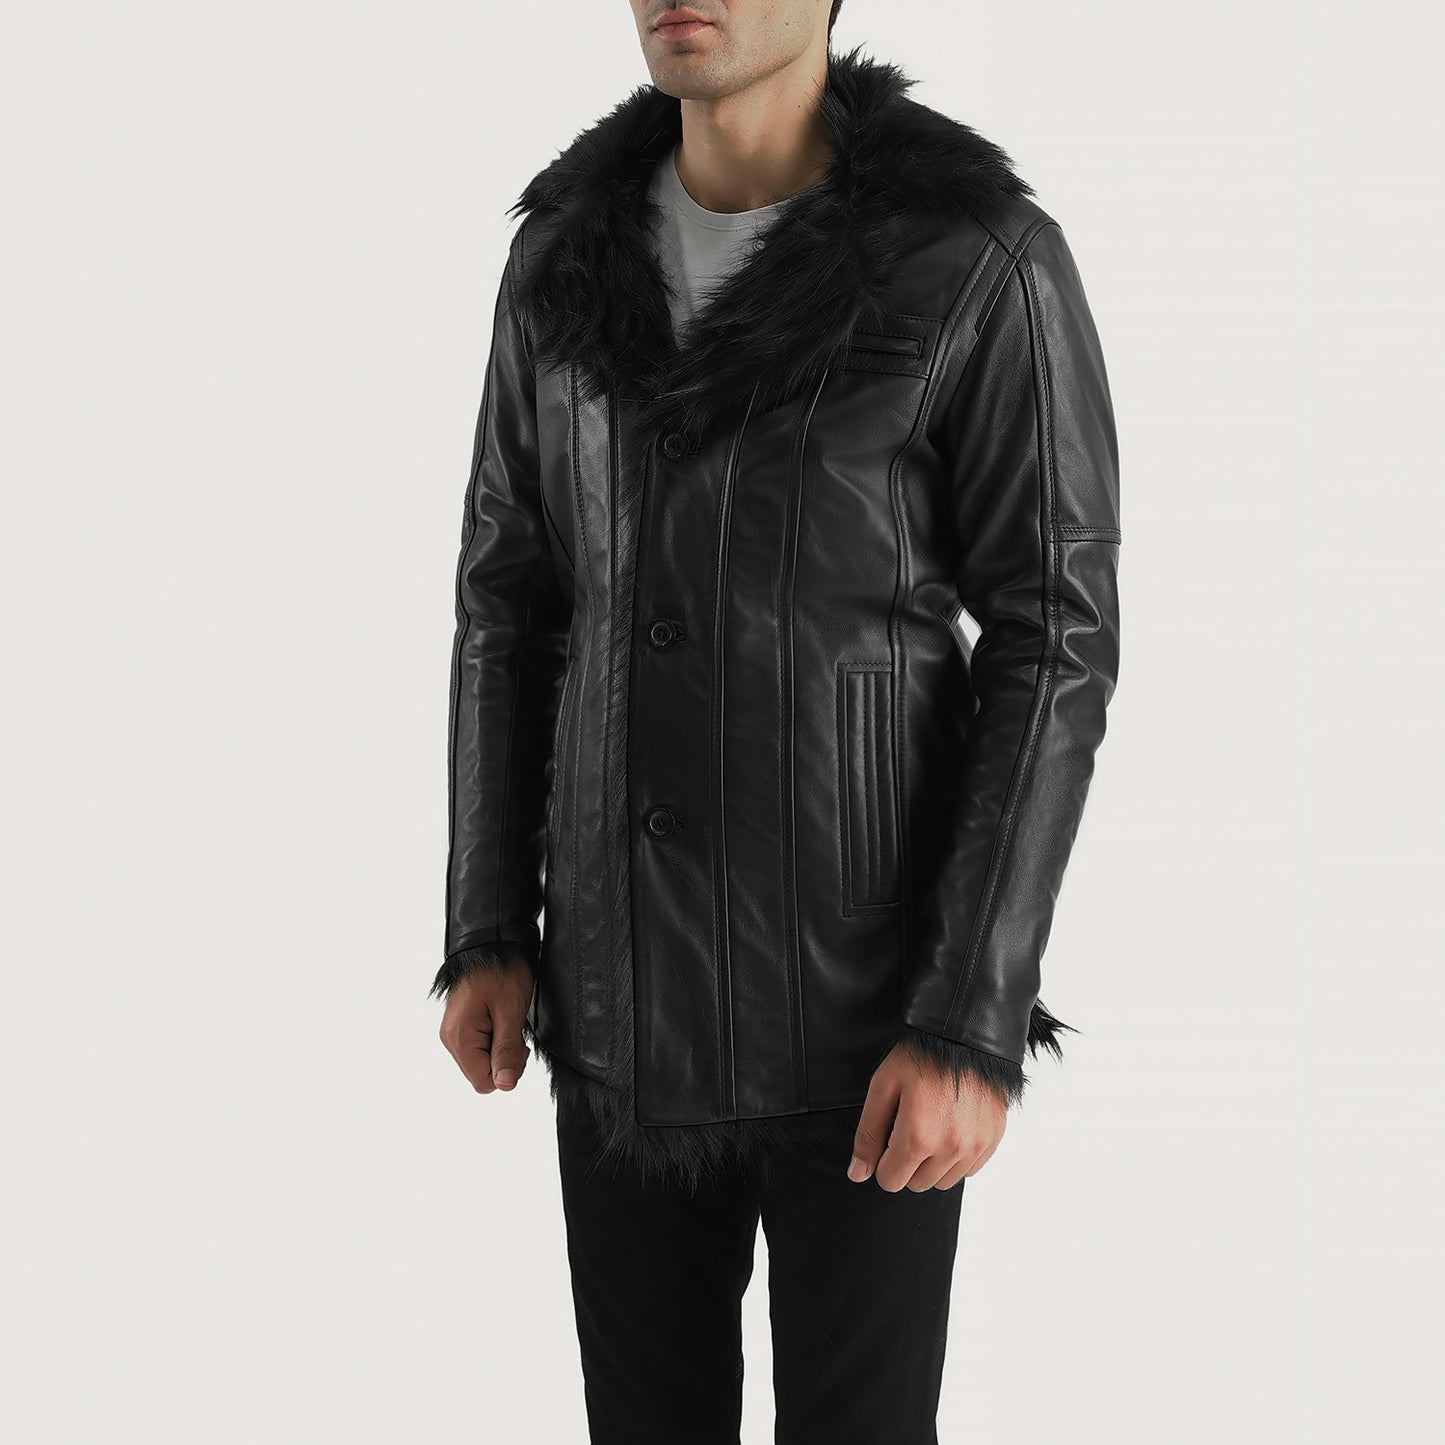 Buy BestFurcliff Black Leather Coat